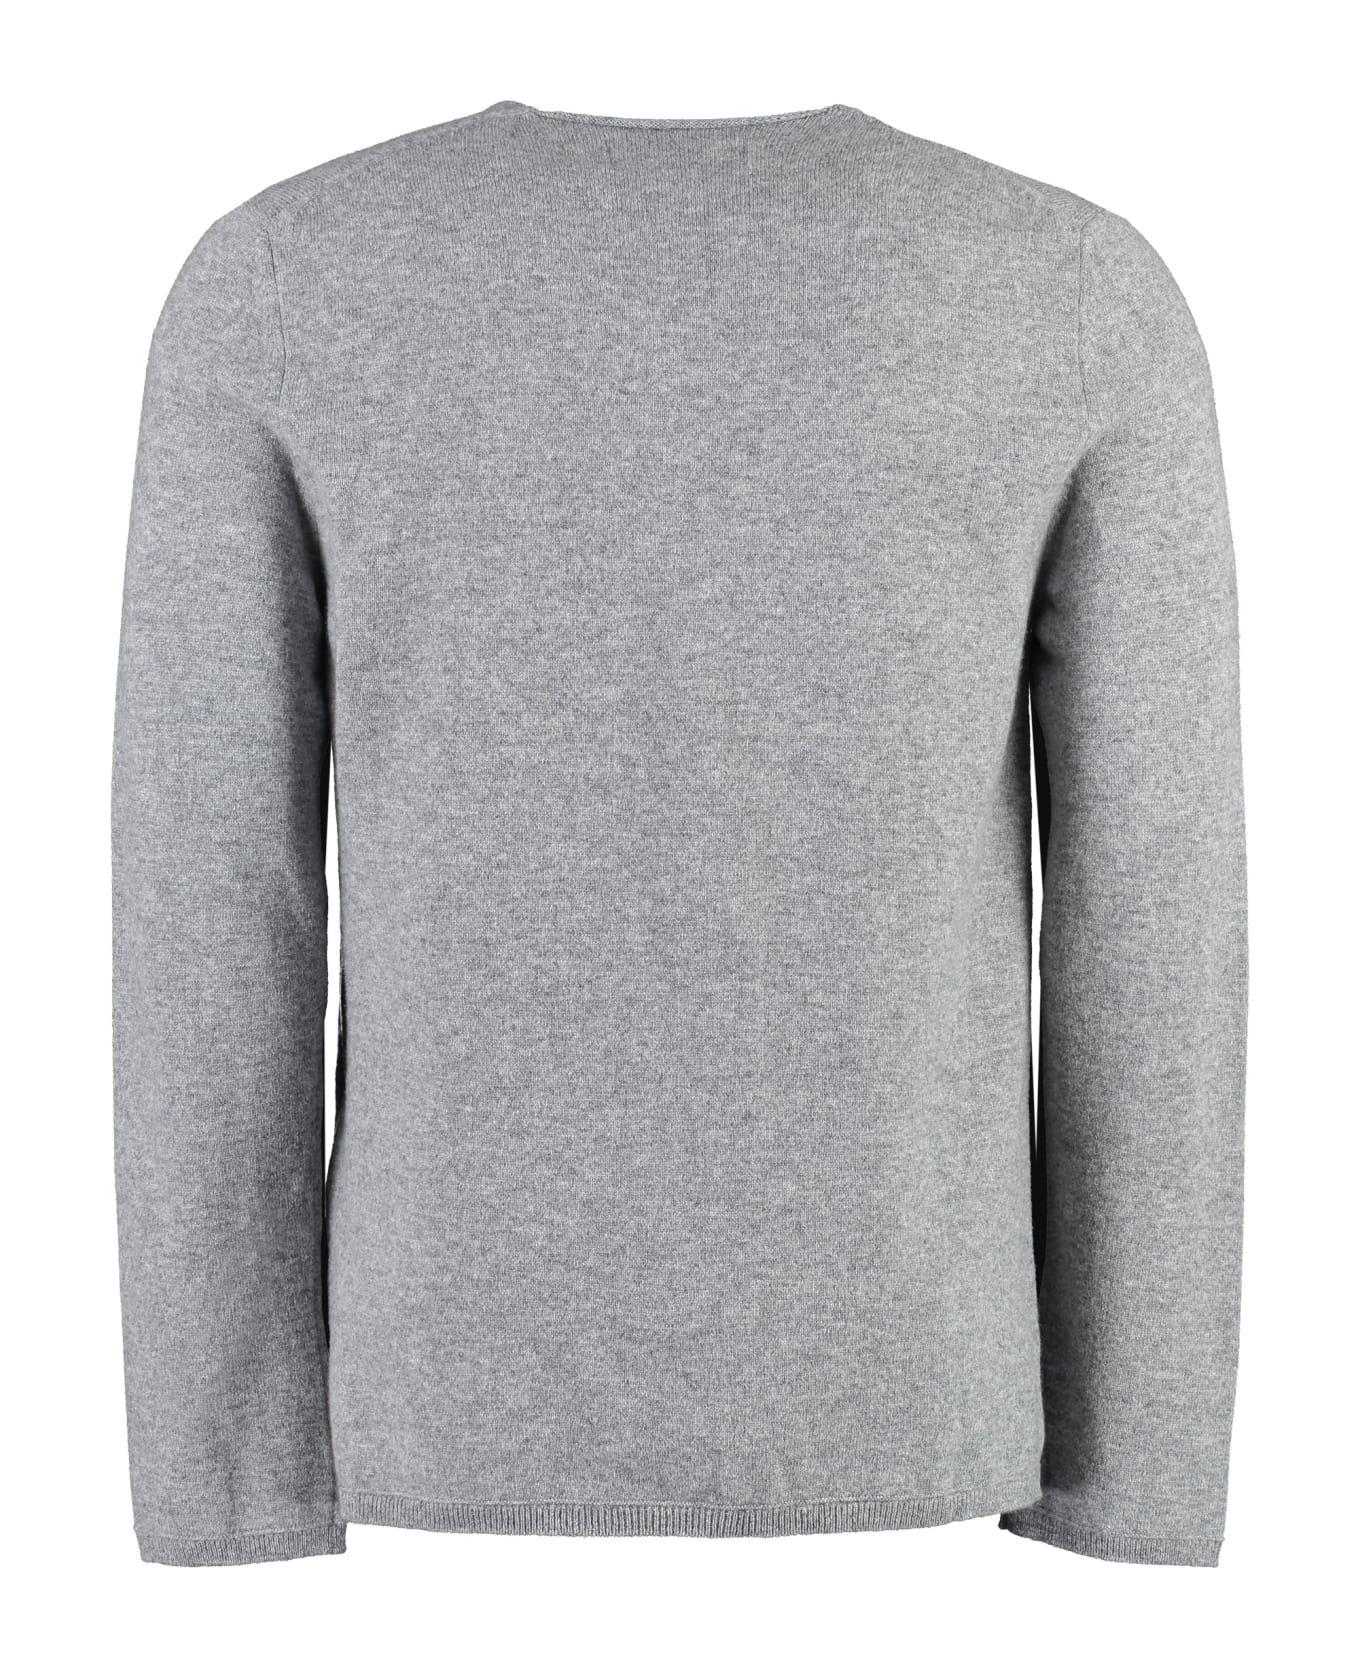 Comme des Garçons Shirt Lacoste X Comme Des Garçons - Cotton Crew-neck Sweater - grey